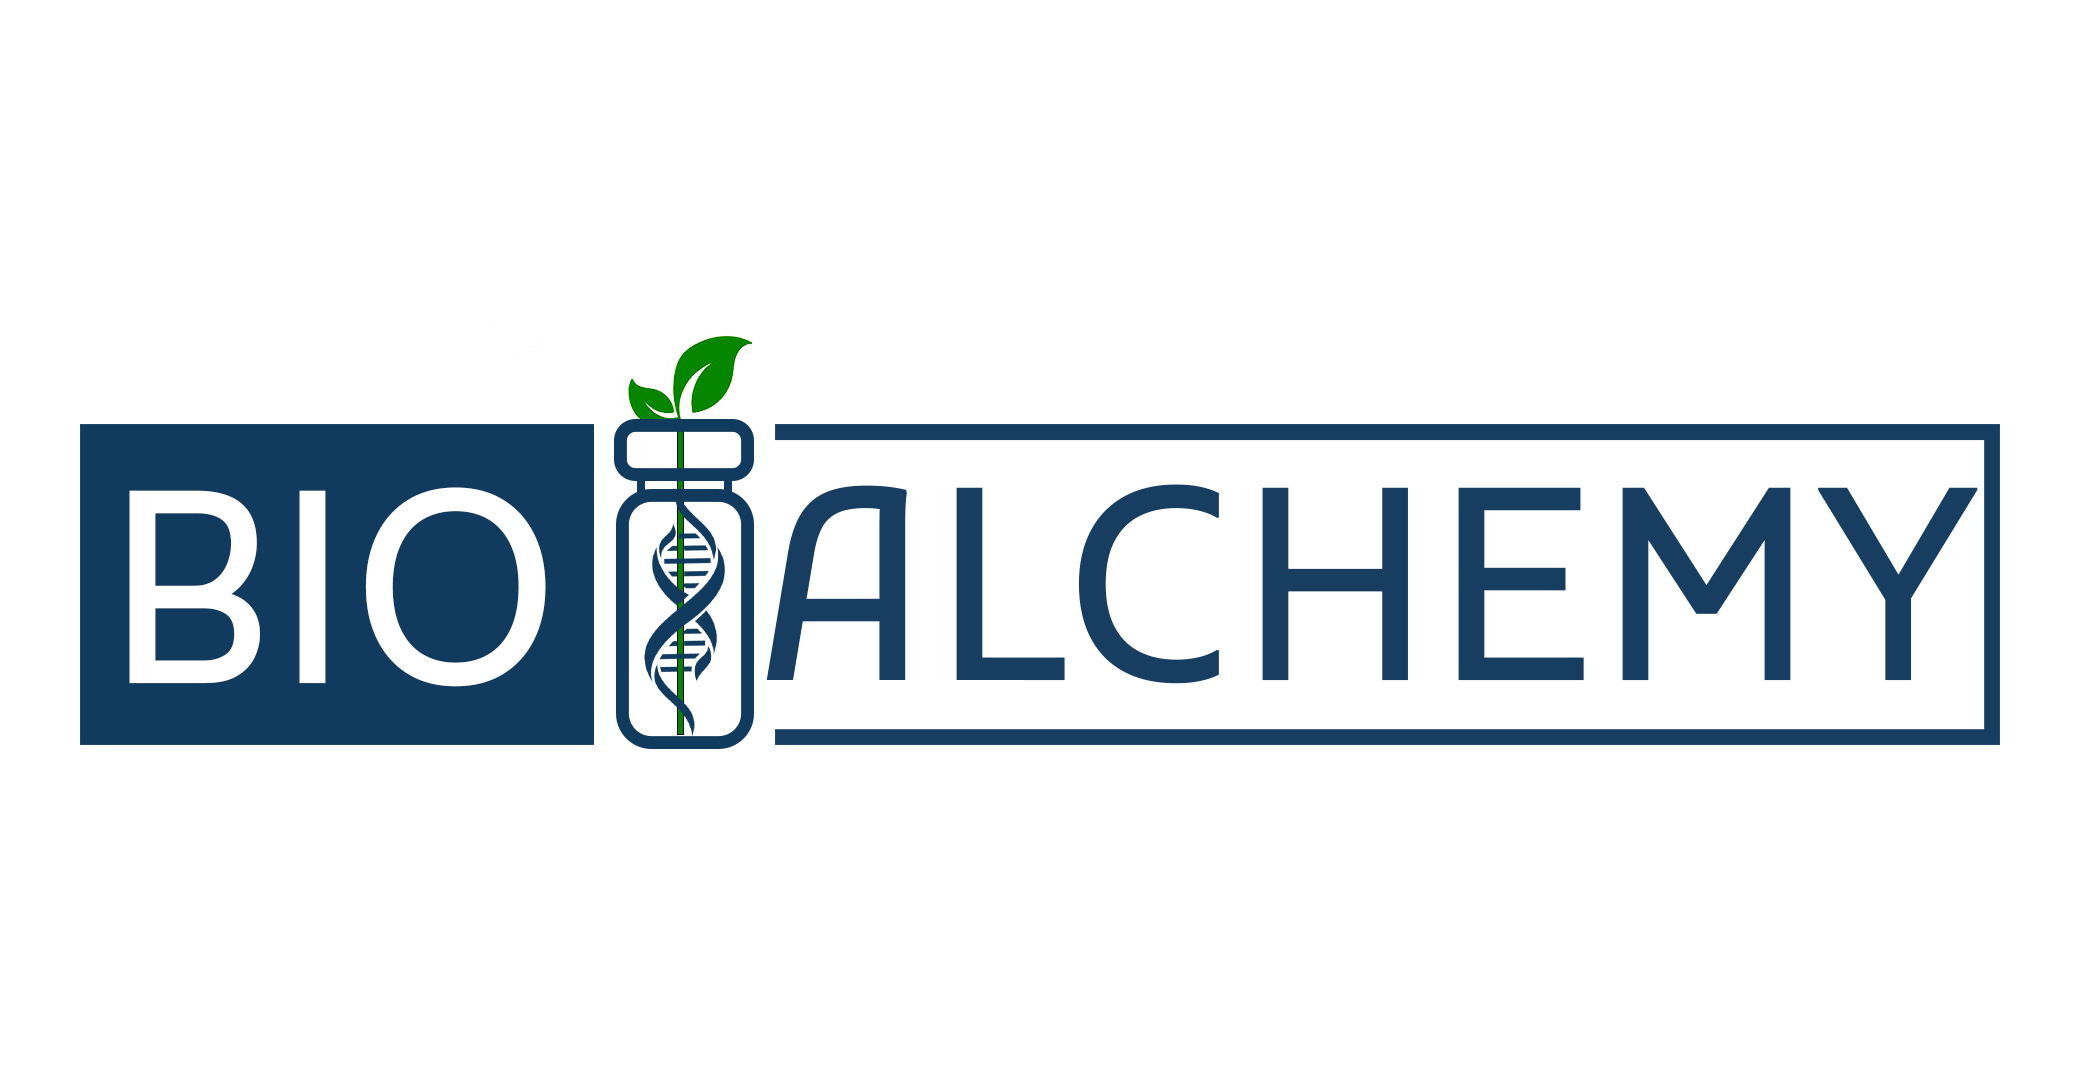 Bioalchemyco